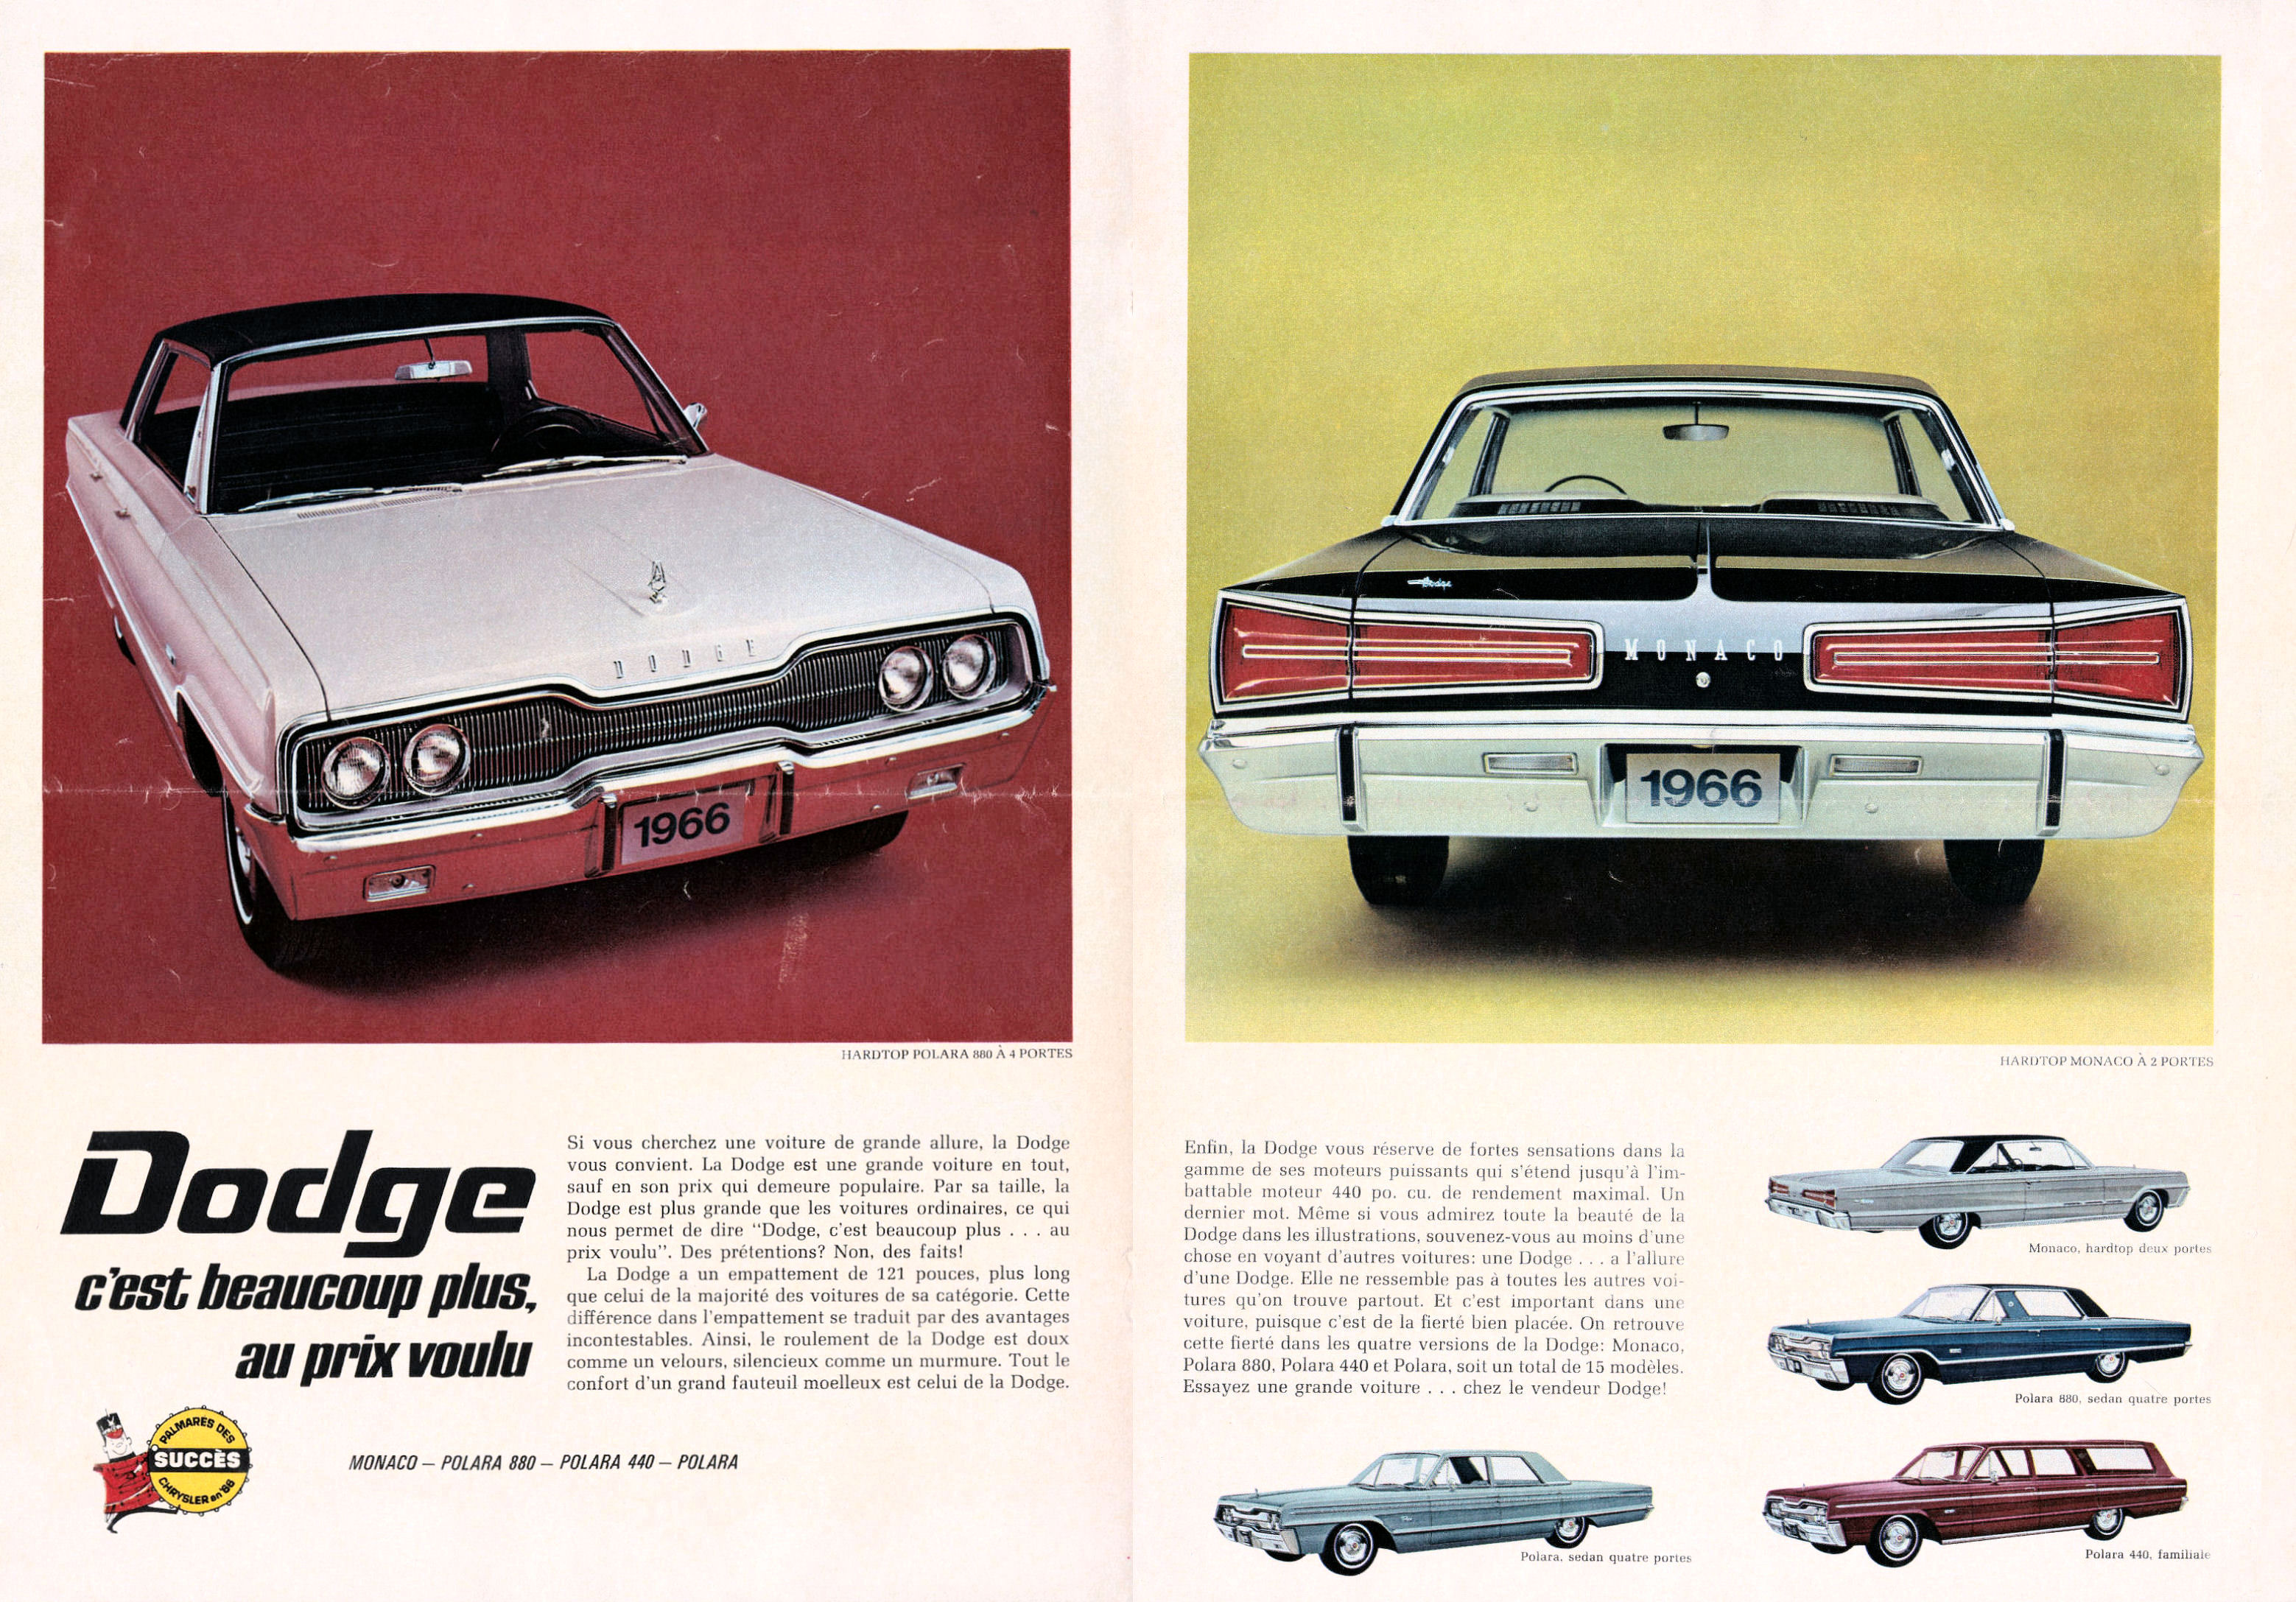 1966_Chrysler_Full_Line_Handout_Cdn-Fr-08-09